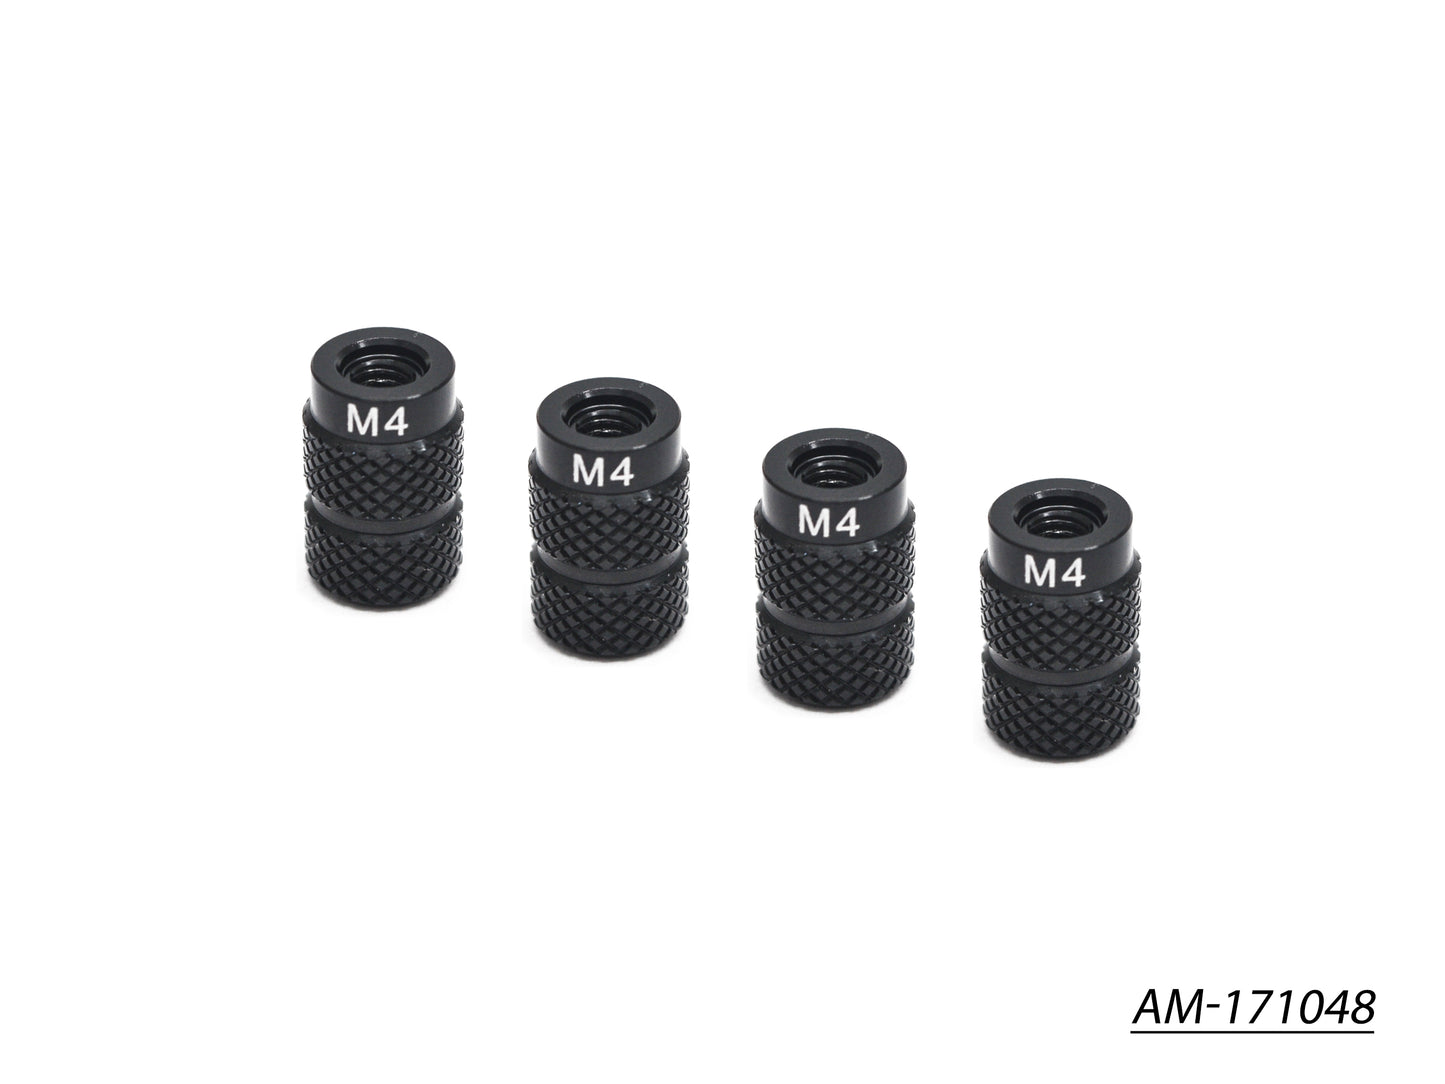 4MM Alu Nut For 1/10 Set-Up System Black Golden (4) (AM-171048)